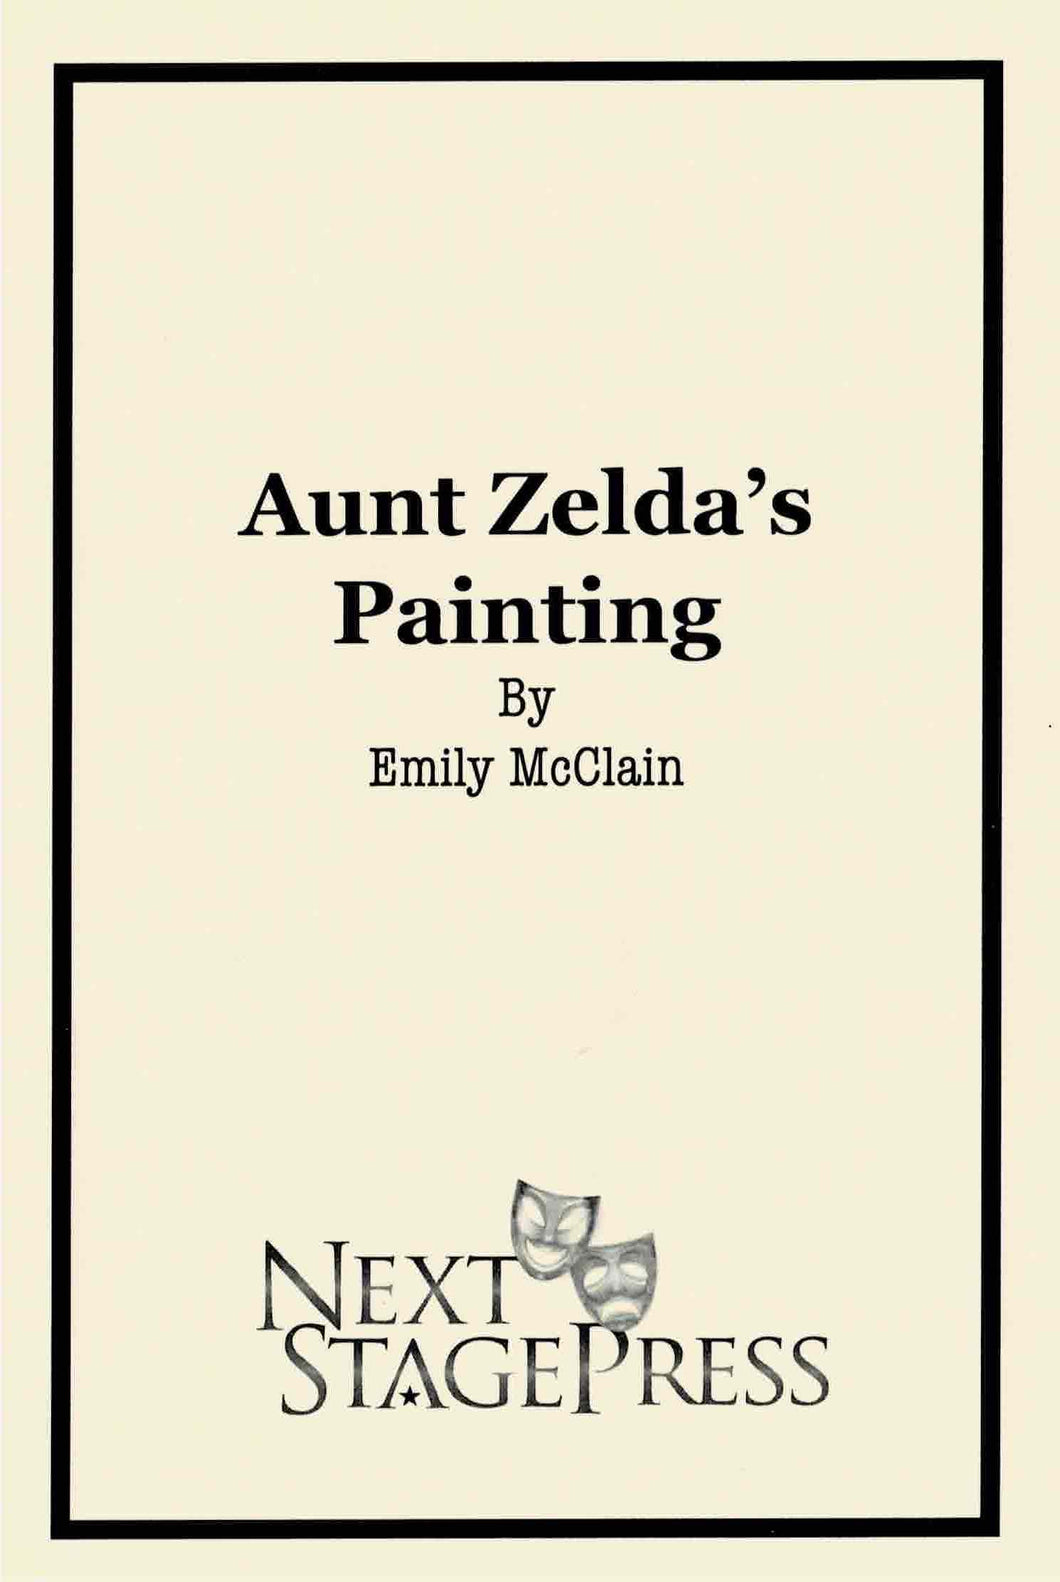 Aunt Zelda's Painting